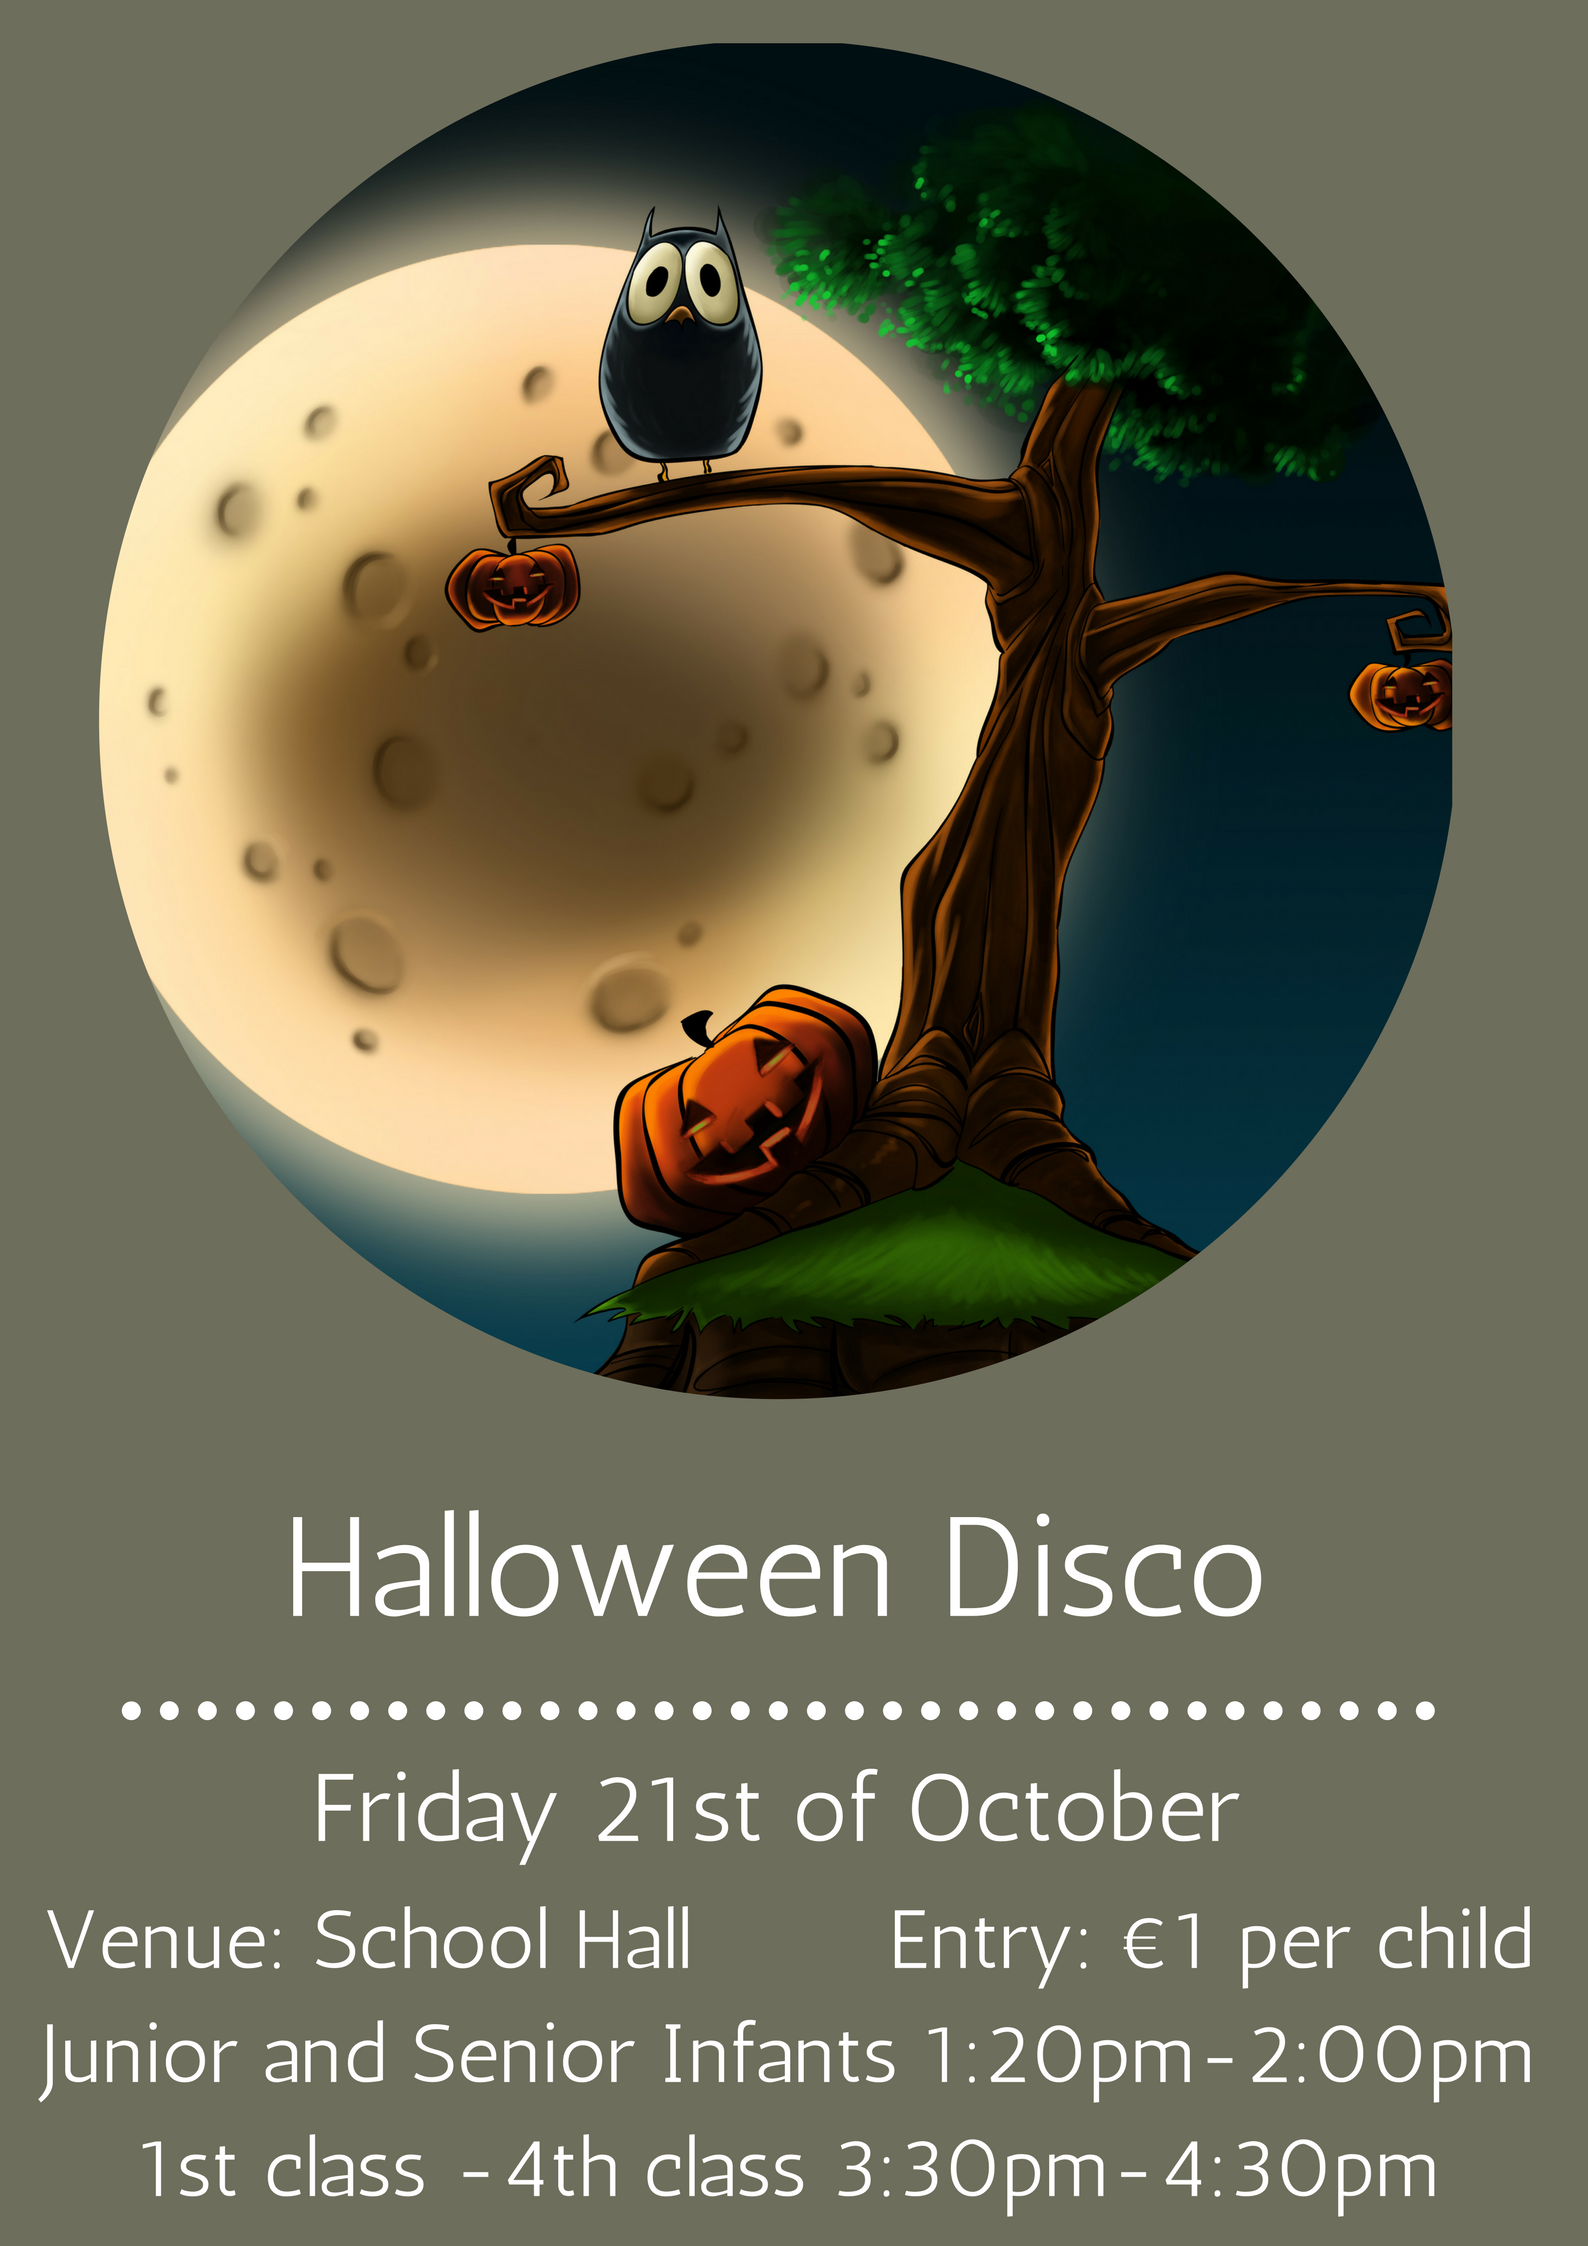 Halloween Disco organised by PTA